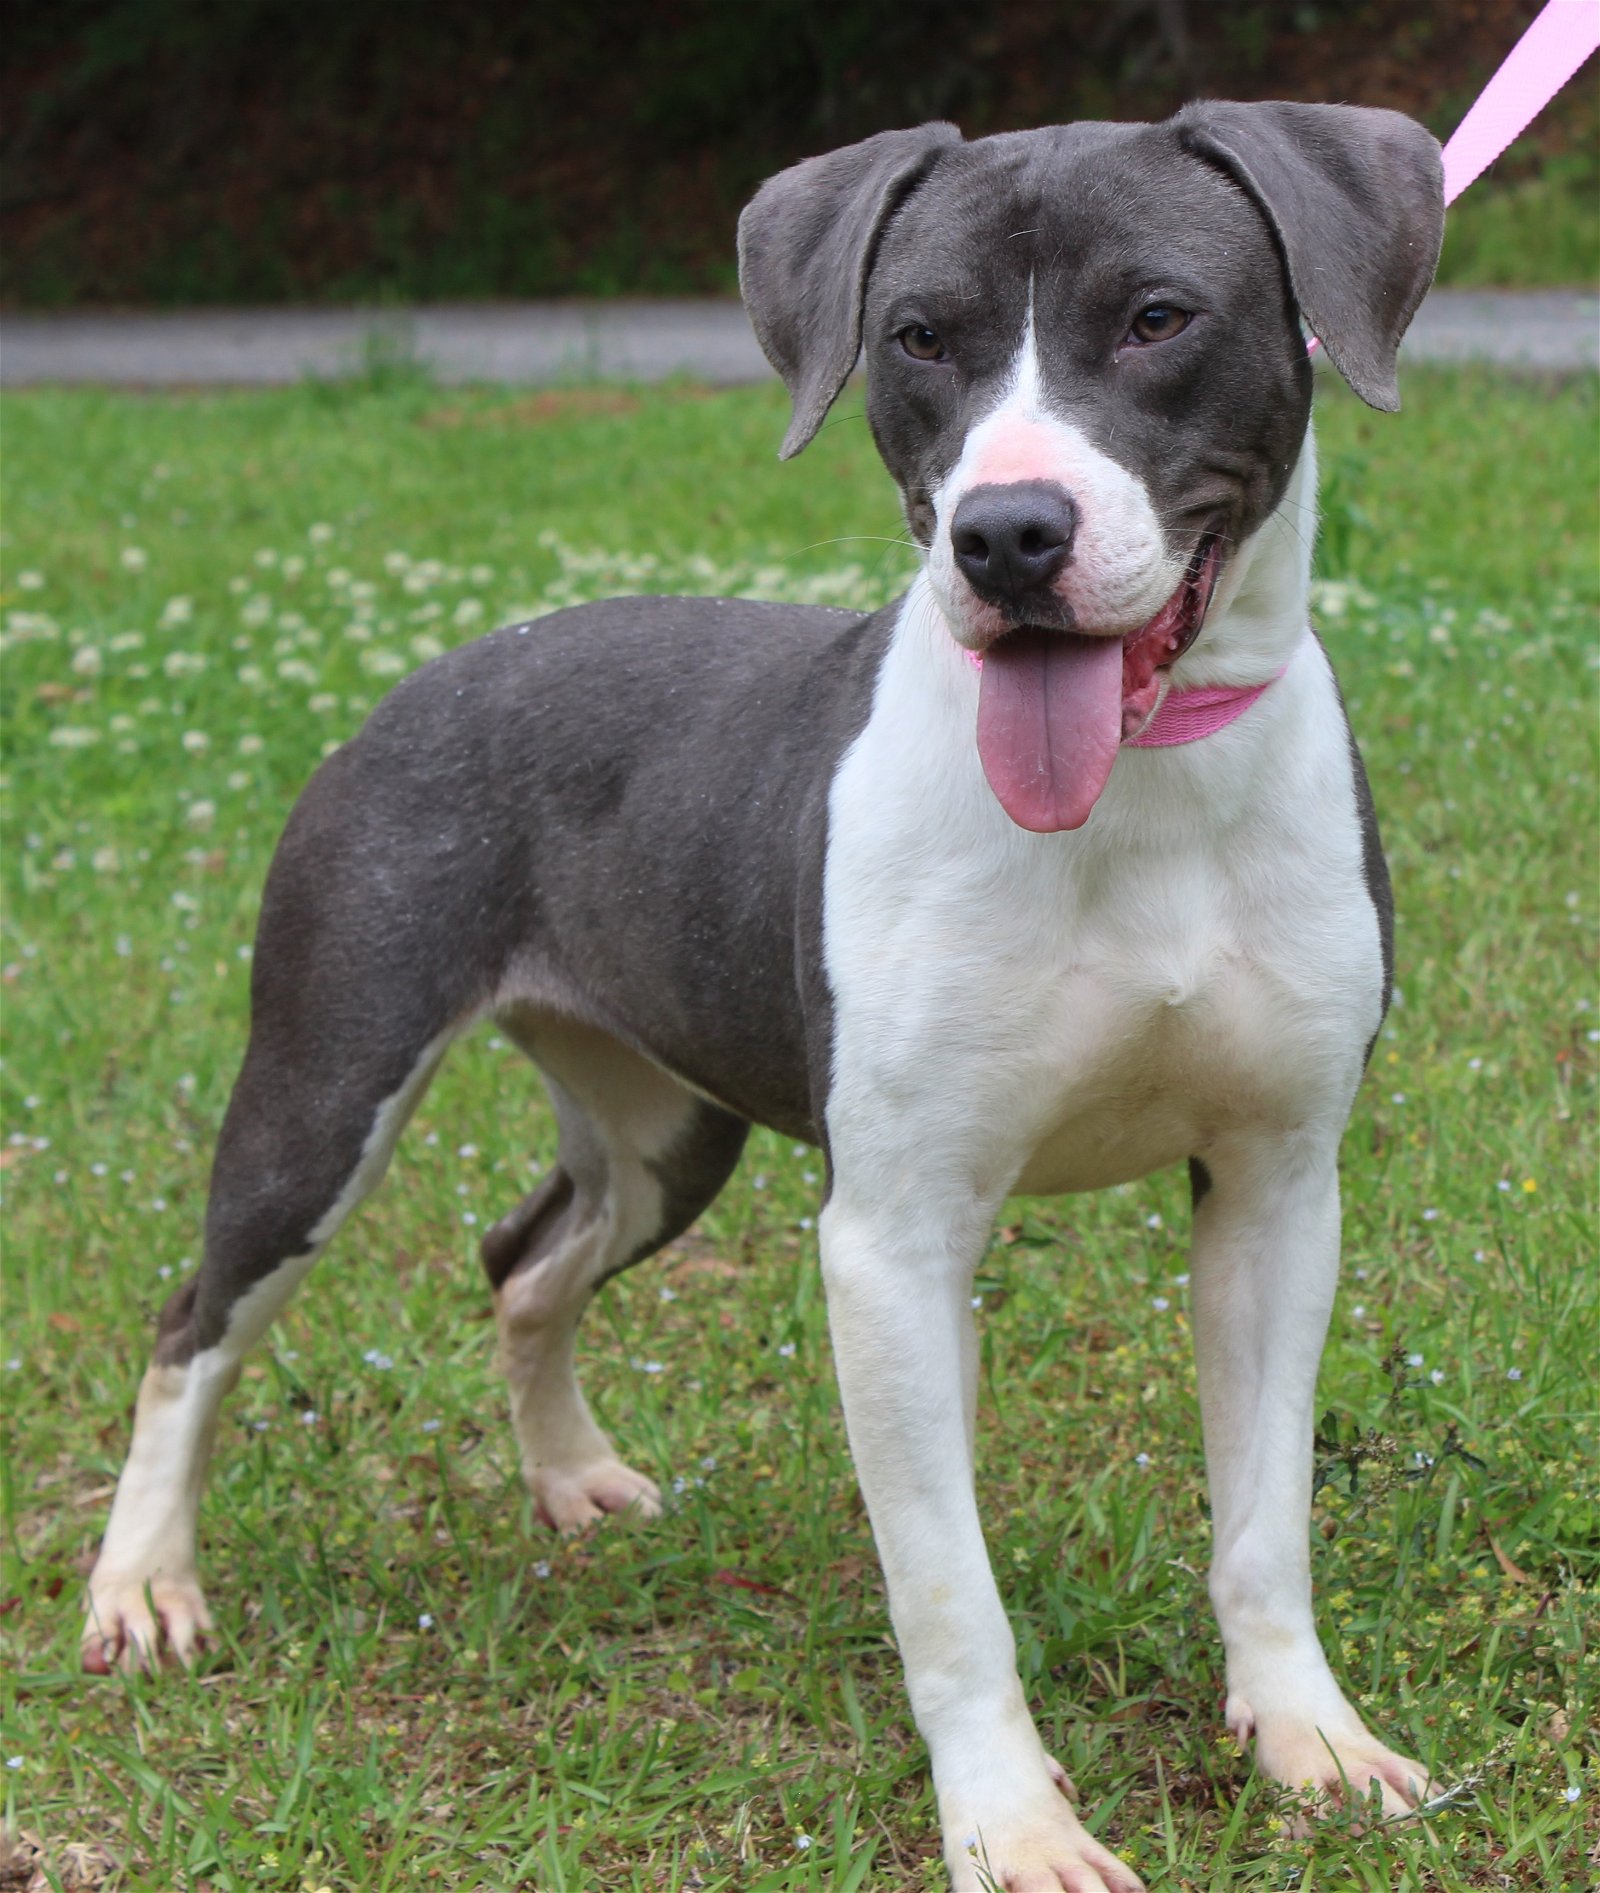 adoptable Dog in Prattville, AL named Saber 39400